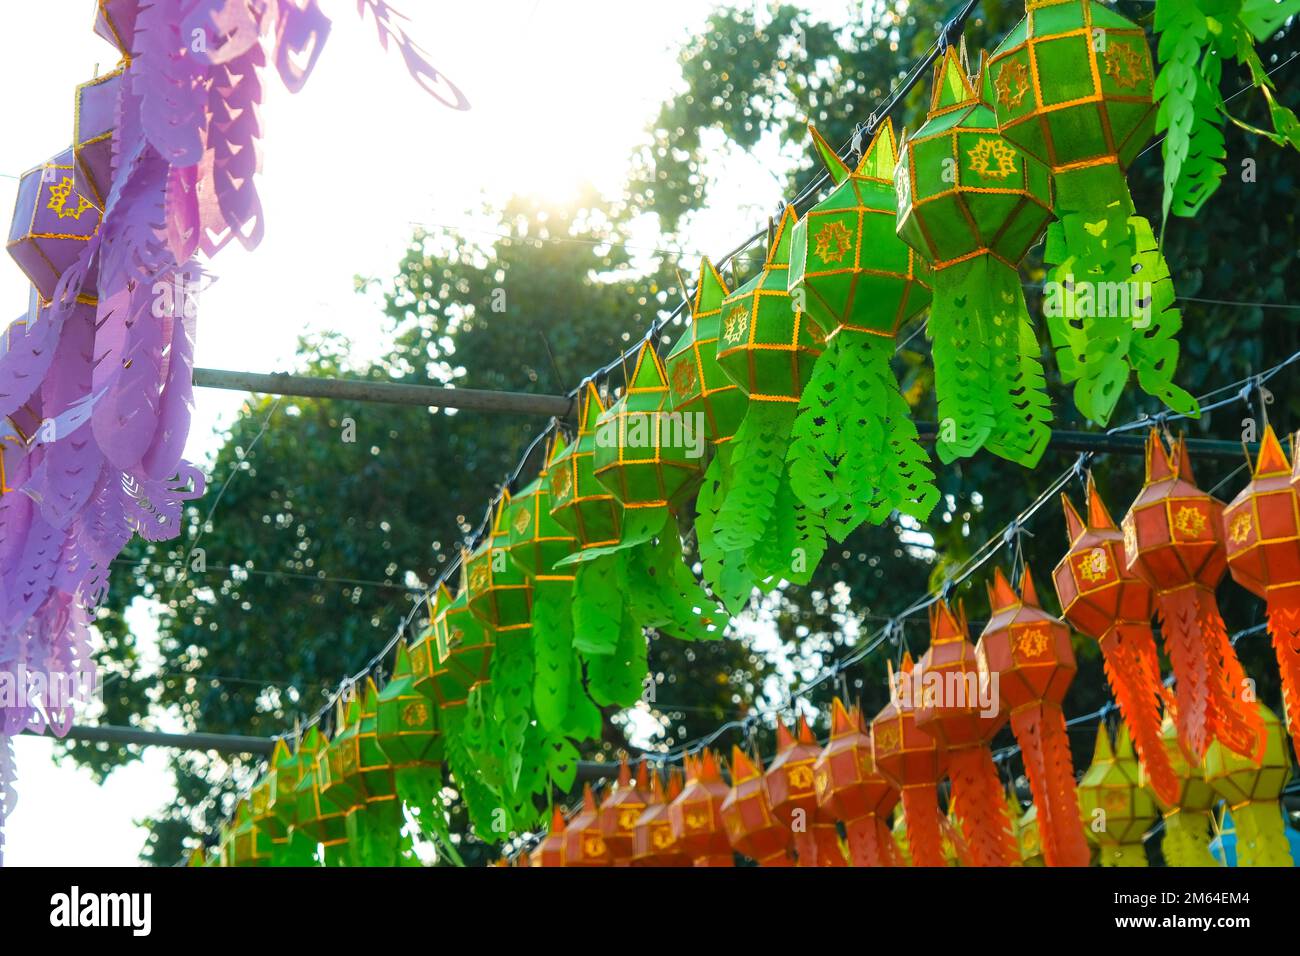 Lo stile delle lanterne di carta della Thailandia del Nord. Le lanterne colorate di carta Lanna sono usate per decorare i festival di Loi Krathong e di Capodanno nel nord della Thailandia. Foto Stock